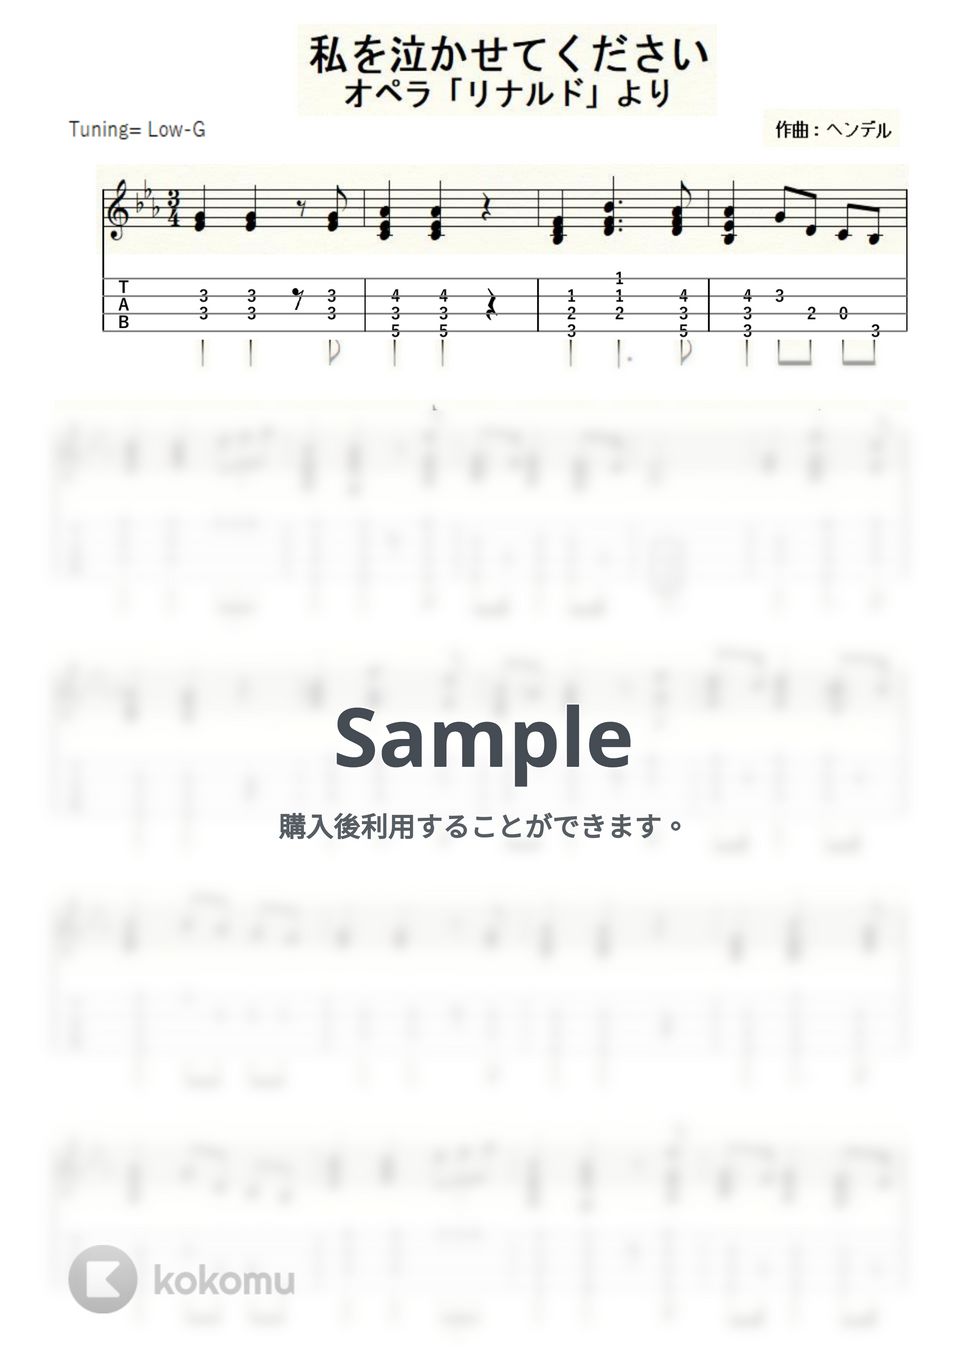 ゲオルク・フリードリヒ・ヘンデル - 私を泣かせてください～オペラ『リナルド』より～ (ｳｸﾚﾚｿﾛ/Low-G/中級) by ukulelepapa